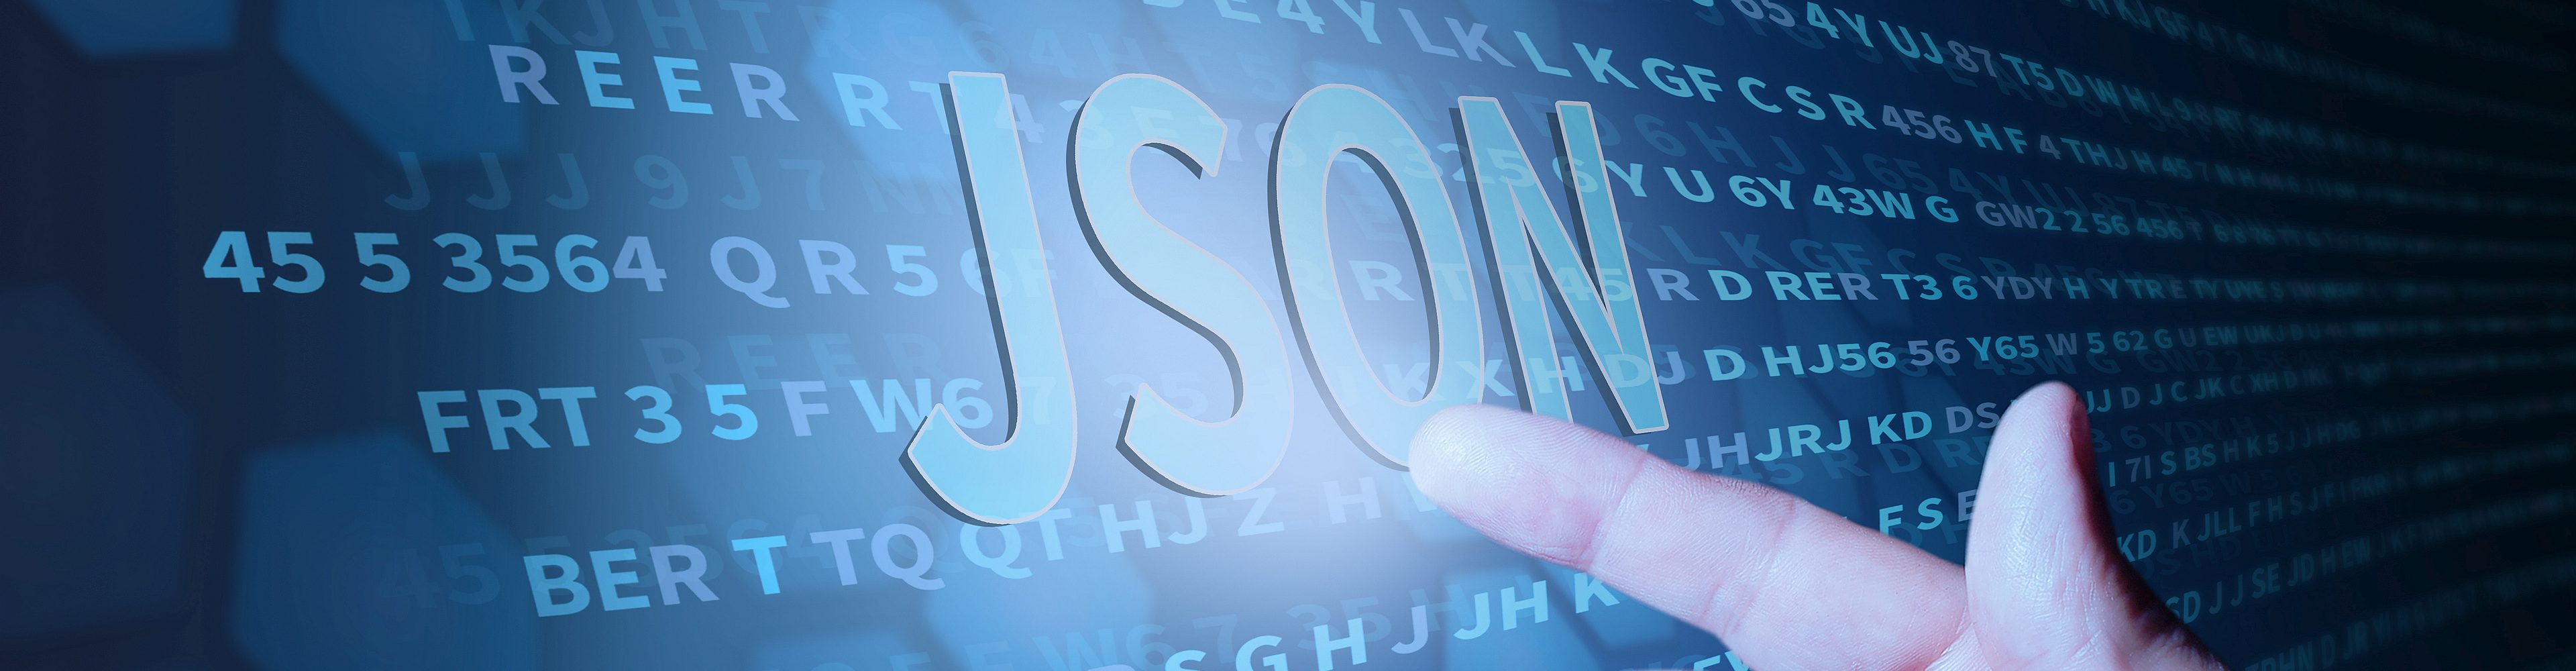 Zeigefinger am Computerinterface deutet auf den Begriff "JSON"